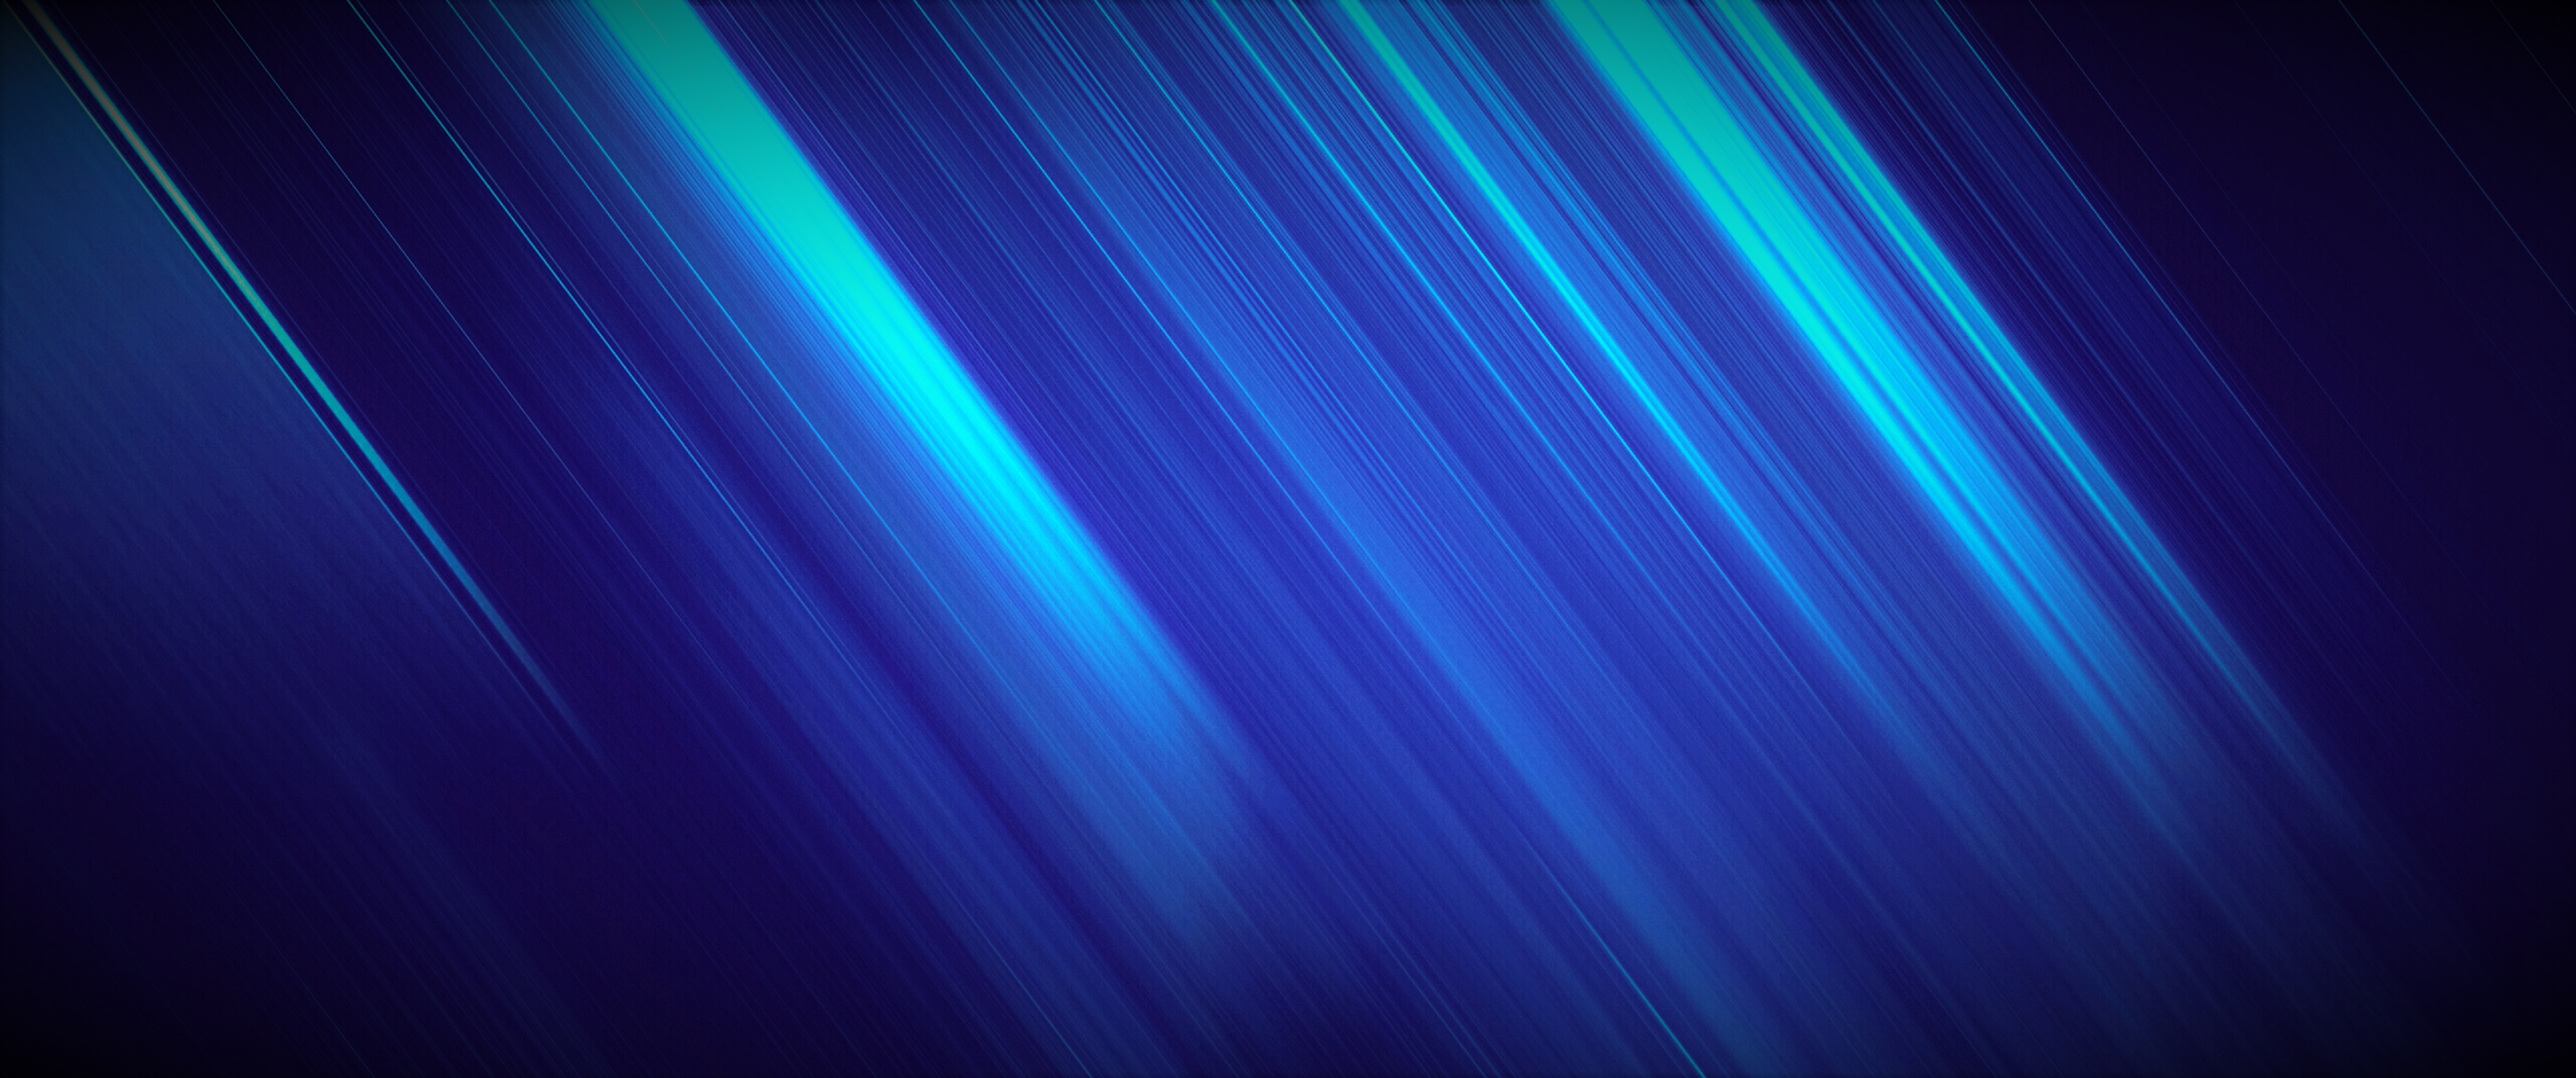 fond d'écran 1336x768,bleu,vert,lumière,bleu électrique,turquoise